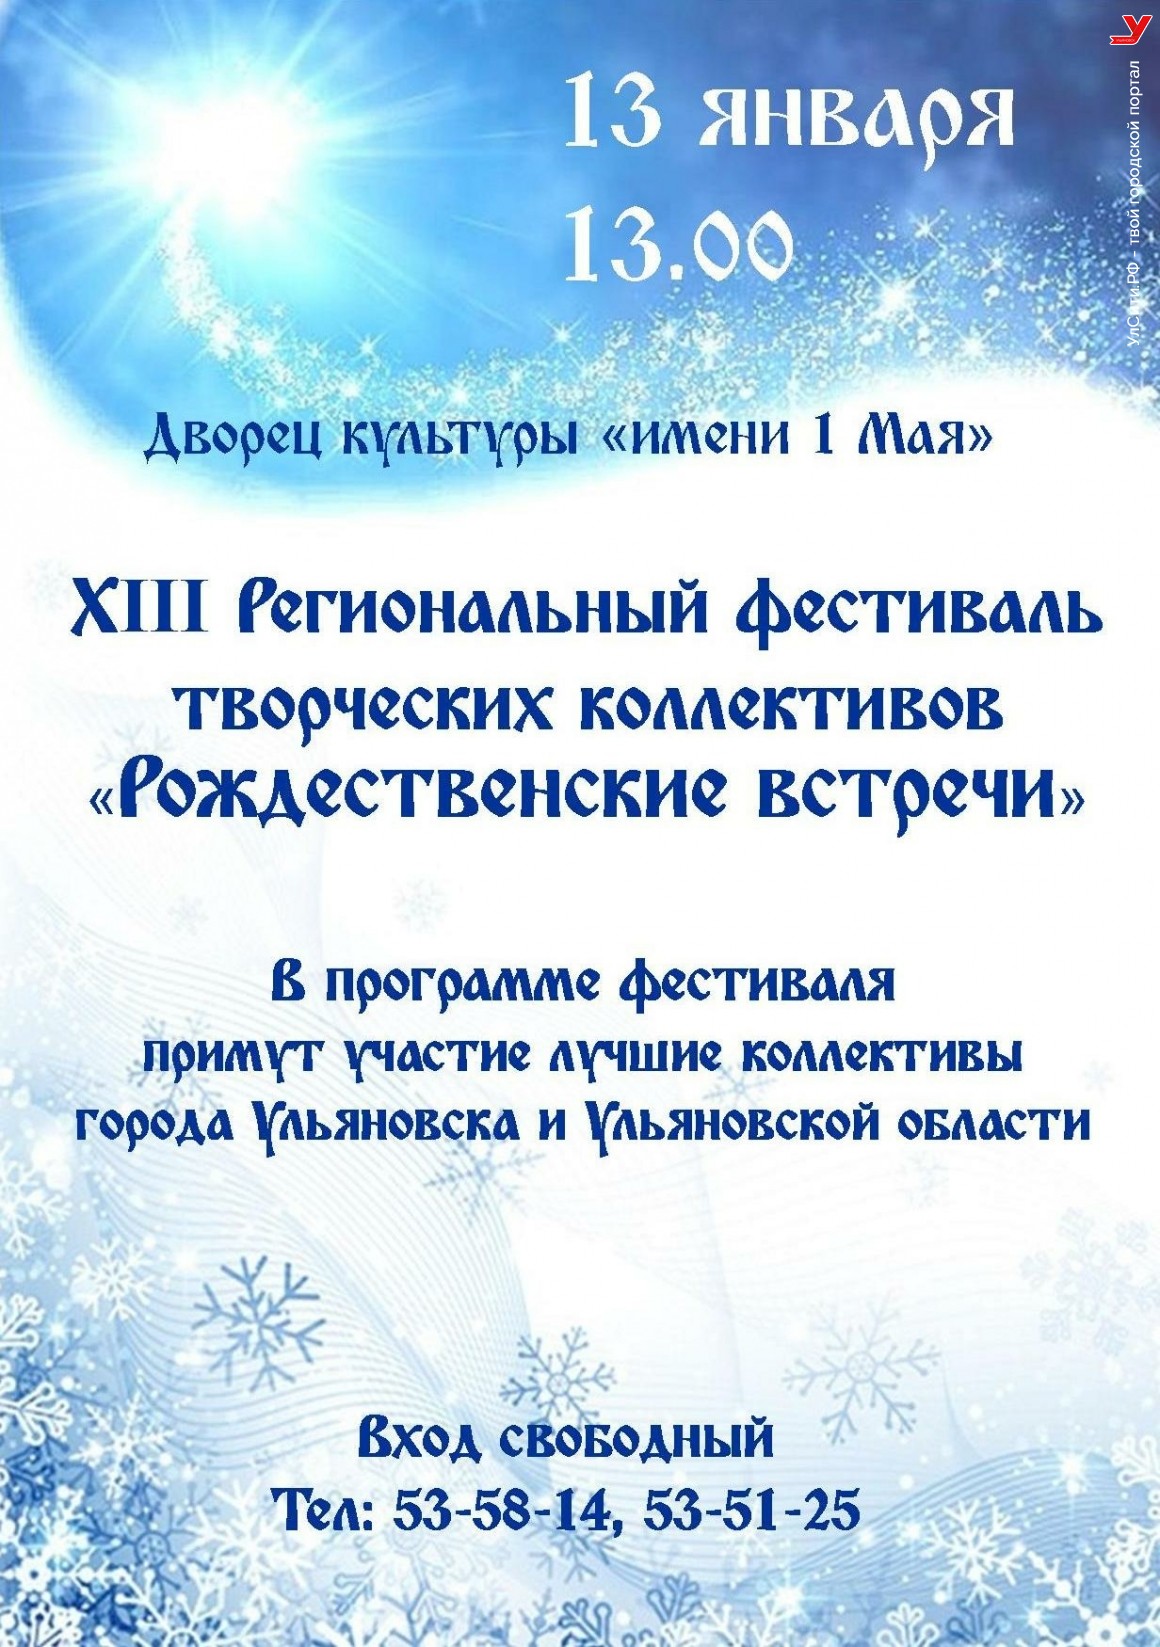 «Рождественские встречи» пройдут в Ульяновске 13 января